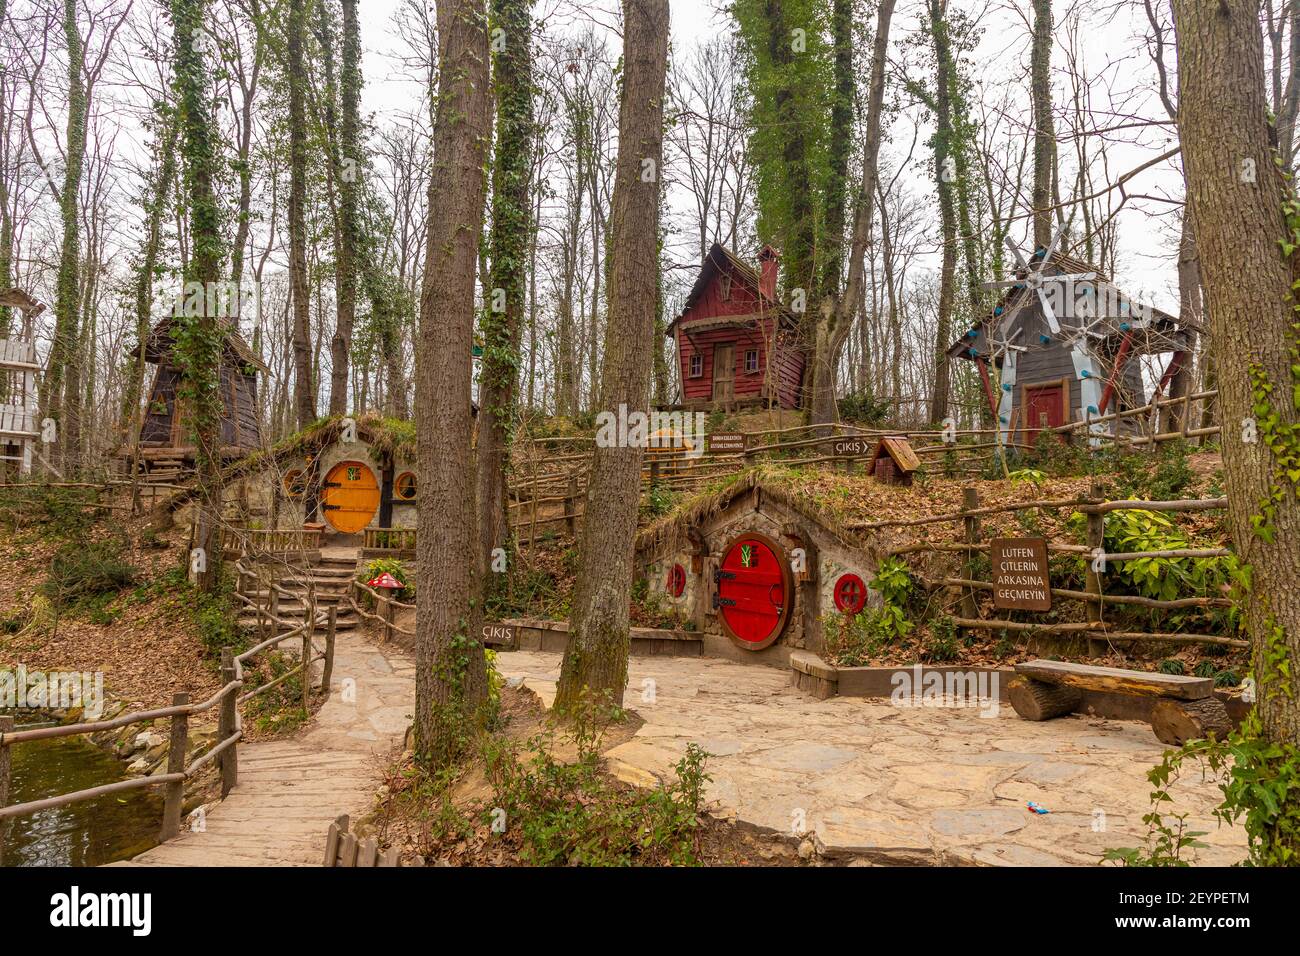 Ormanyan Izmit City Park, bunte Holzhäuser für den Tourismus inspiriert vom Film der Hobbit, März 6, Kocaeli, Türkei Stockfoto